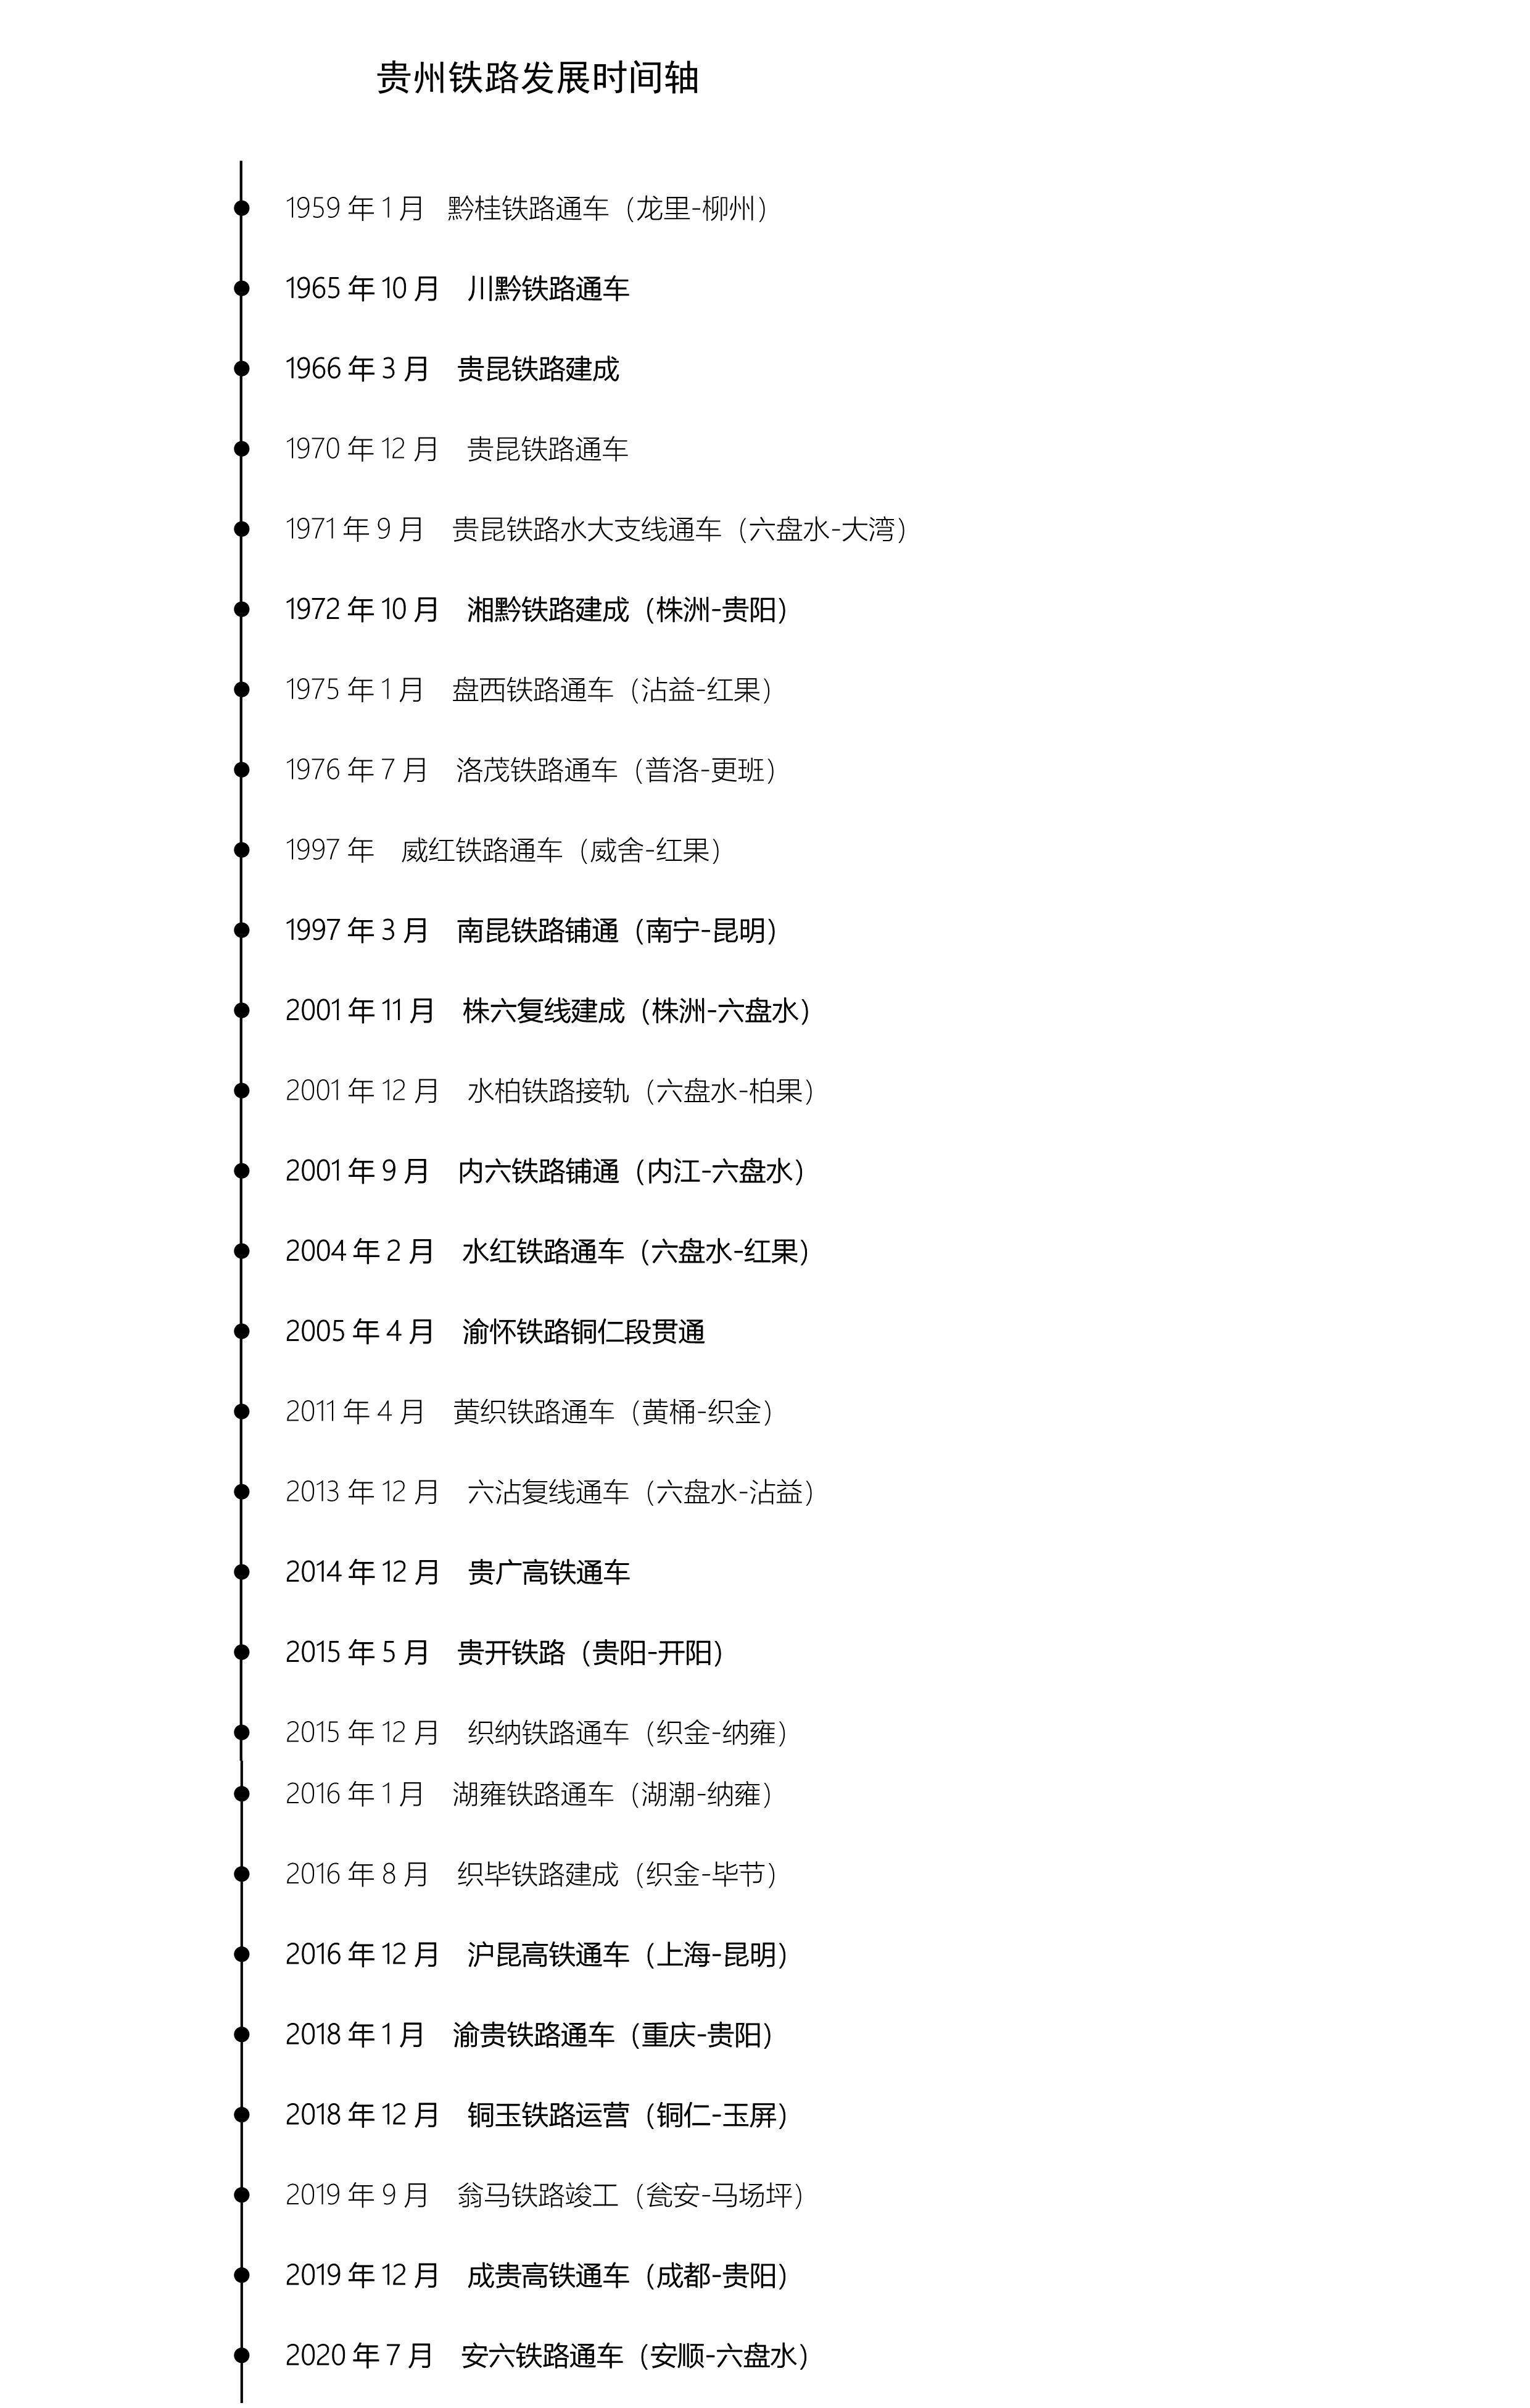 贵州铁路发展时间轴:从黔桂铁路到贵广,沪昆,渝贵,成贵高铁